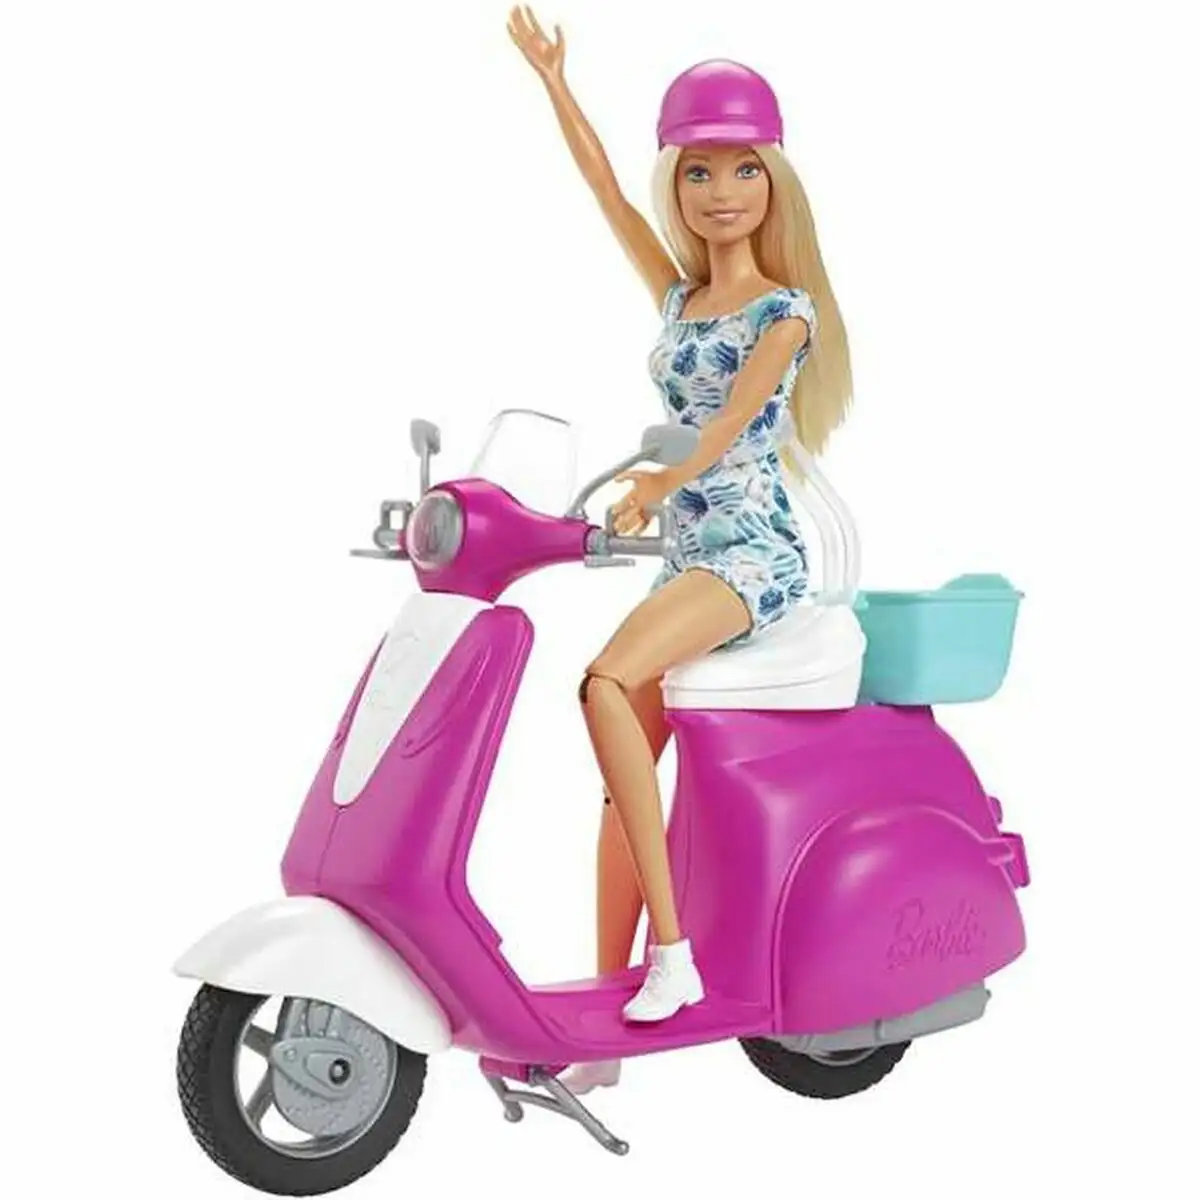 Poupee barbie and her scooter_9074. Entrez dans le Monde de DIAYTAR SENEGAL - Où la Satisfaction est la Priorité. Explorez notre sélection pensée pour vous offrir une expérience de shopping qui va au-delà de vos attentes.